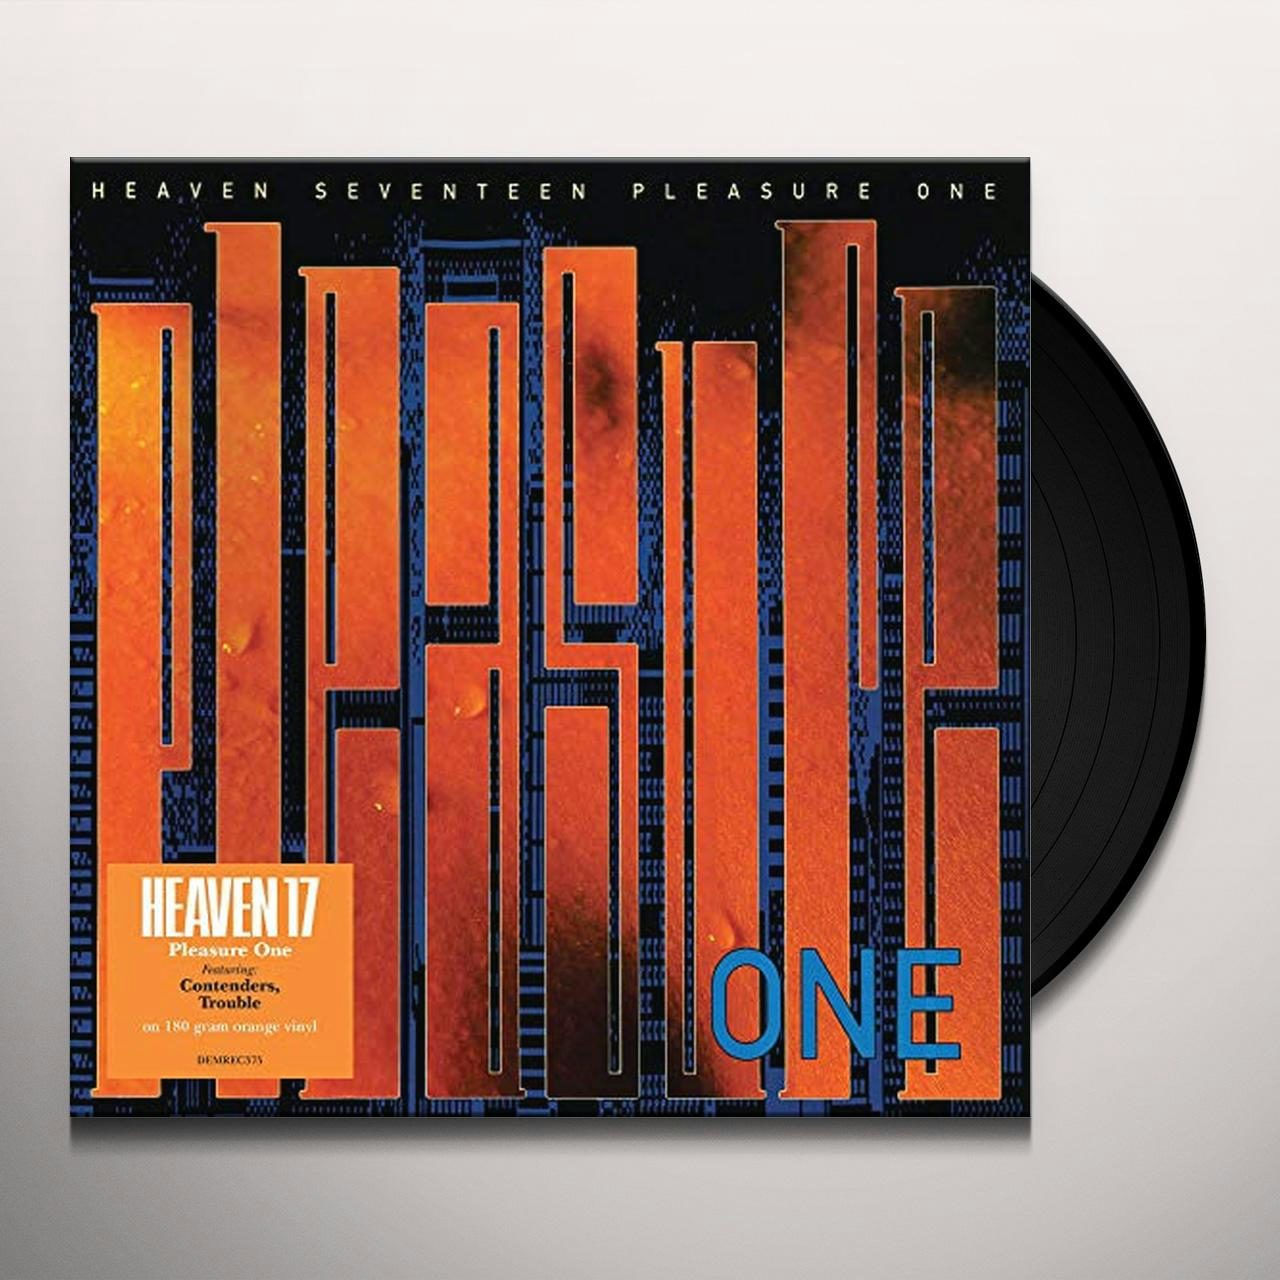 Pleasure One Vinyl Record - Heaven 17